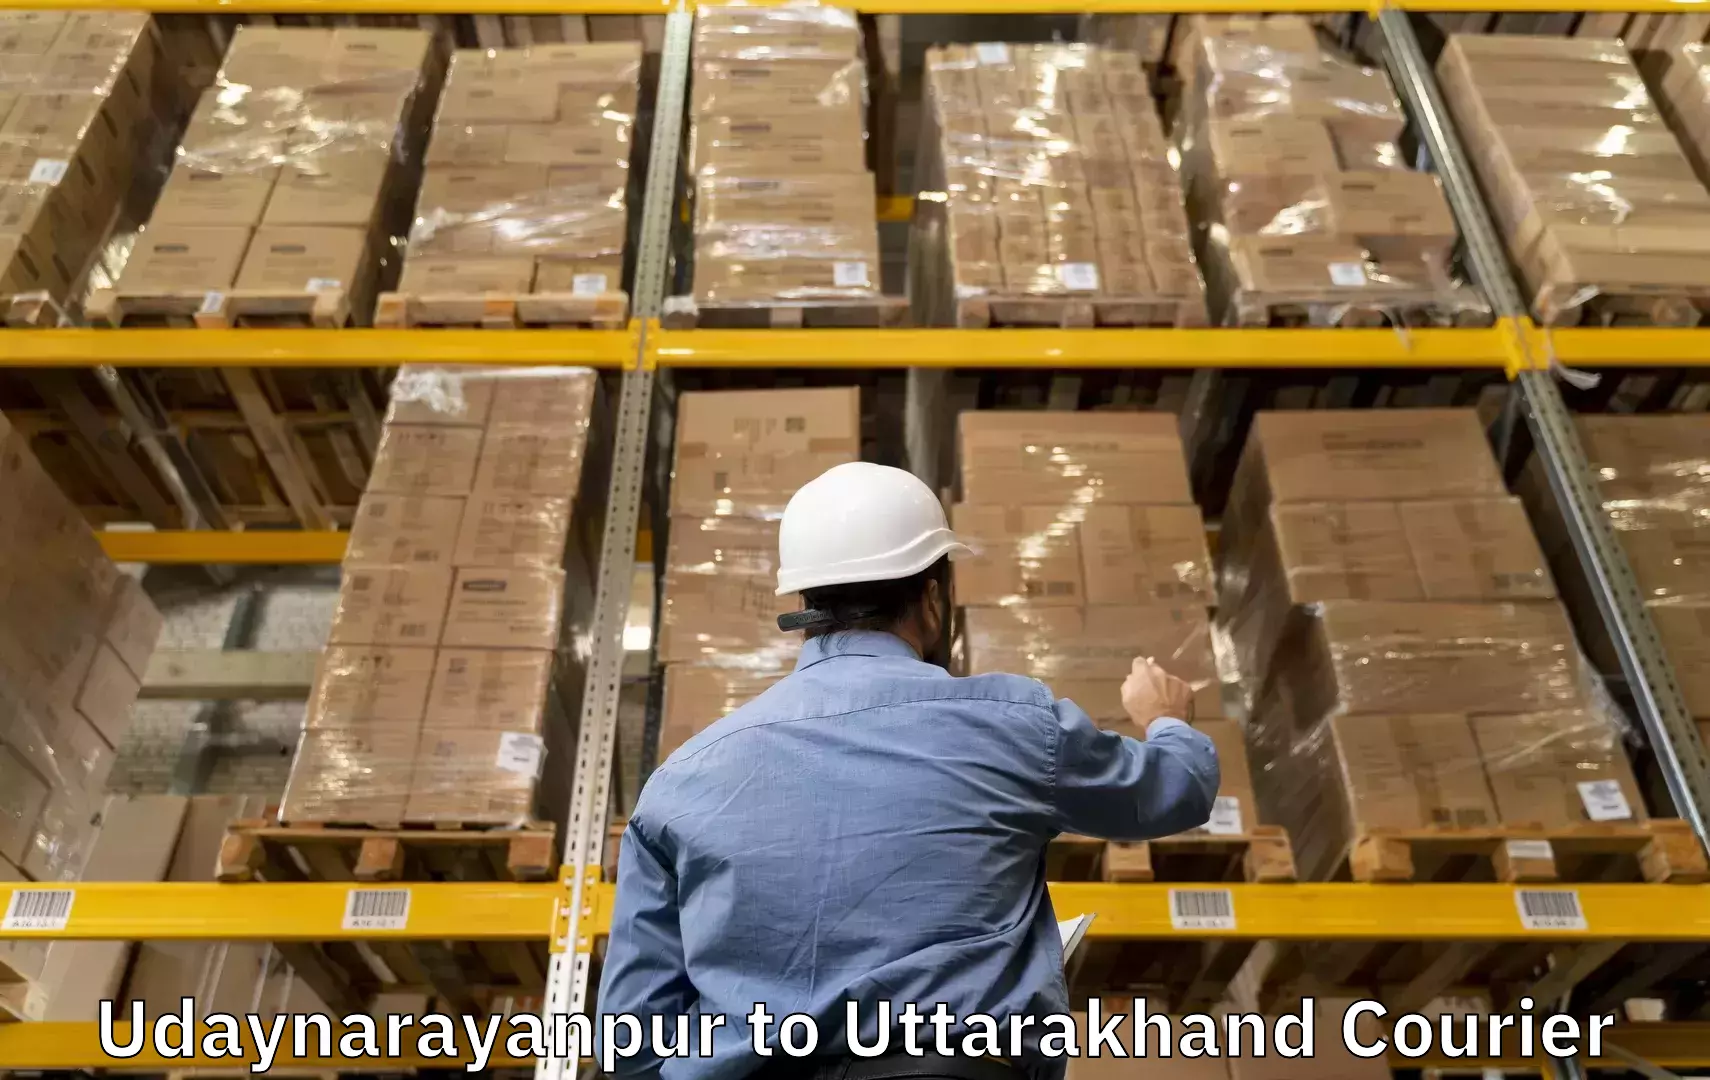 Baggage delivery optimization in Udaynarayanpur to Kotdwara